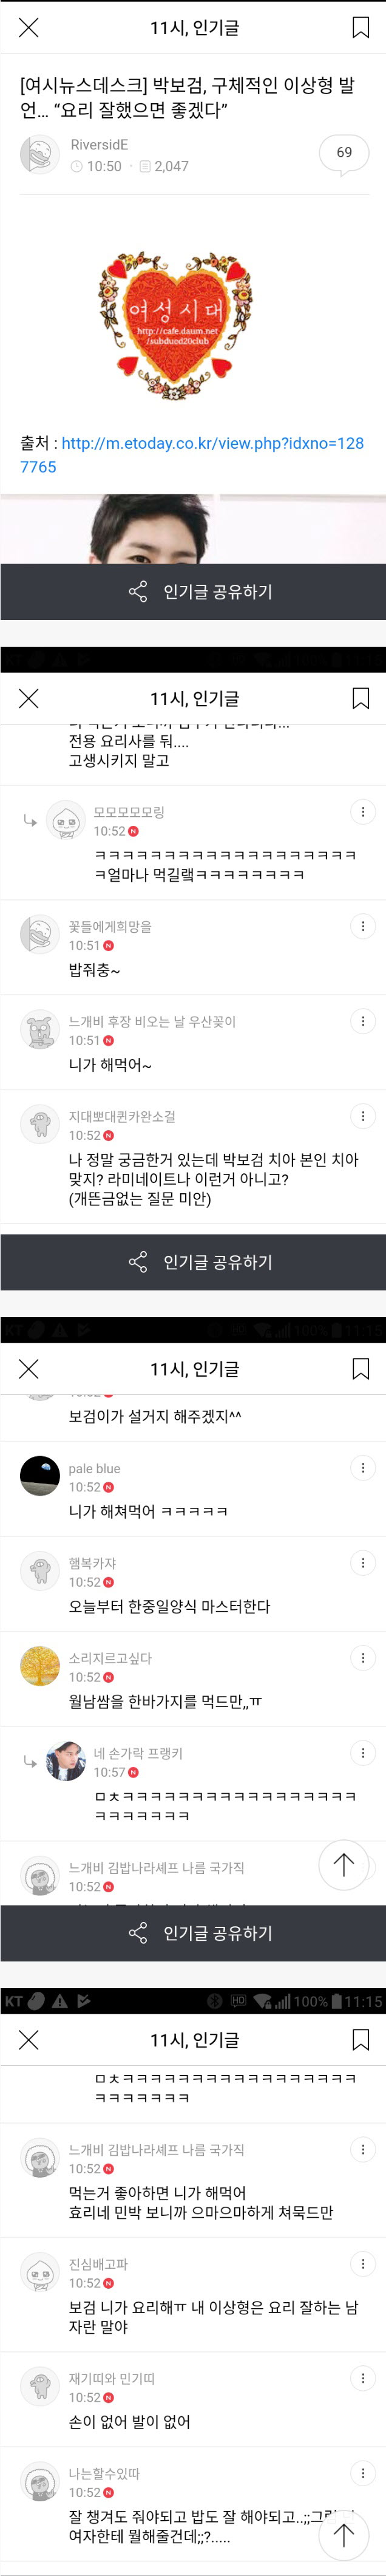 박보검 이상형에 실망